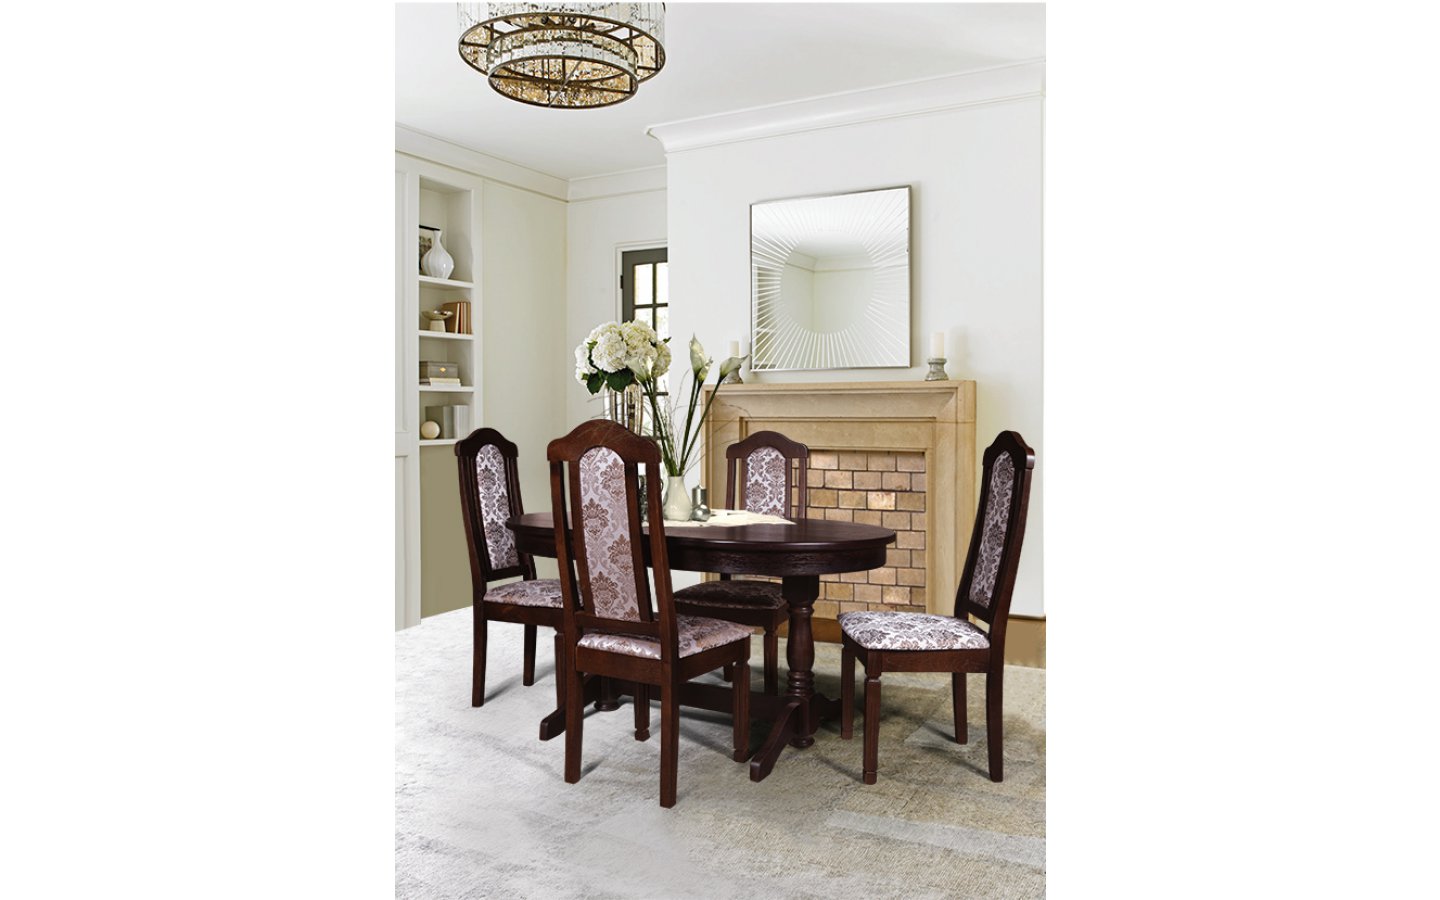 Ельская мебельная фабрика каталог с ценами обеденный стол и стулья